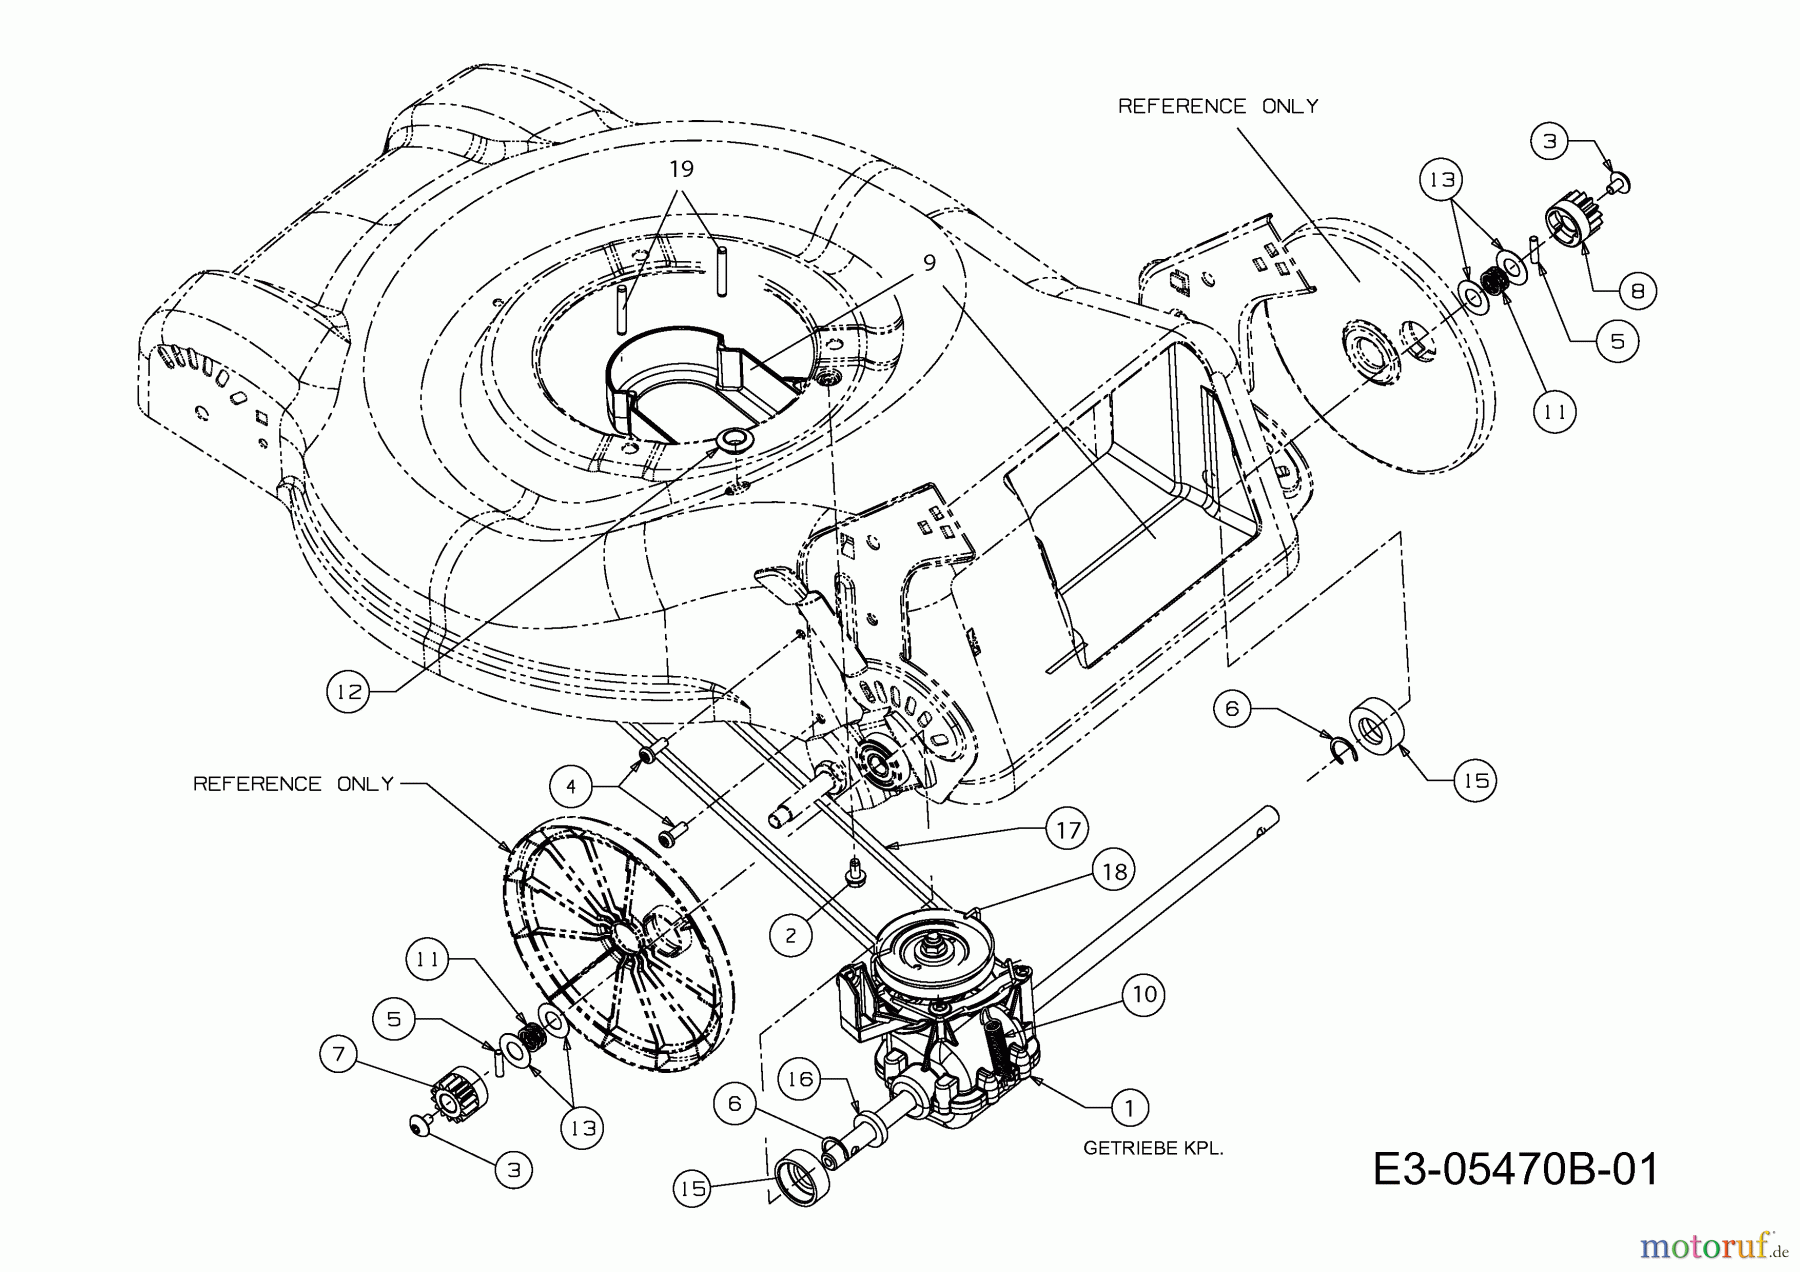  Preisfuxx Motormäher mit Antrieb PF 46 A 12E-J2JD628  (2011) Getriebe